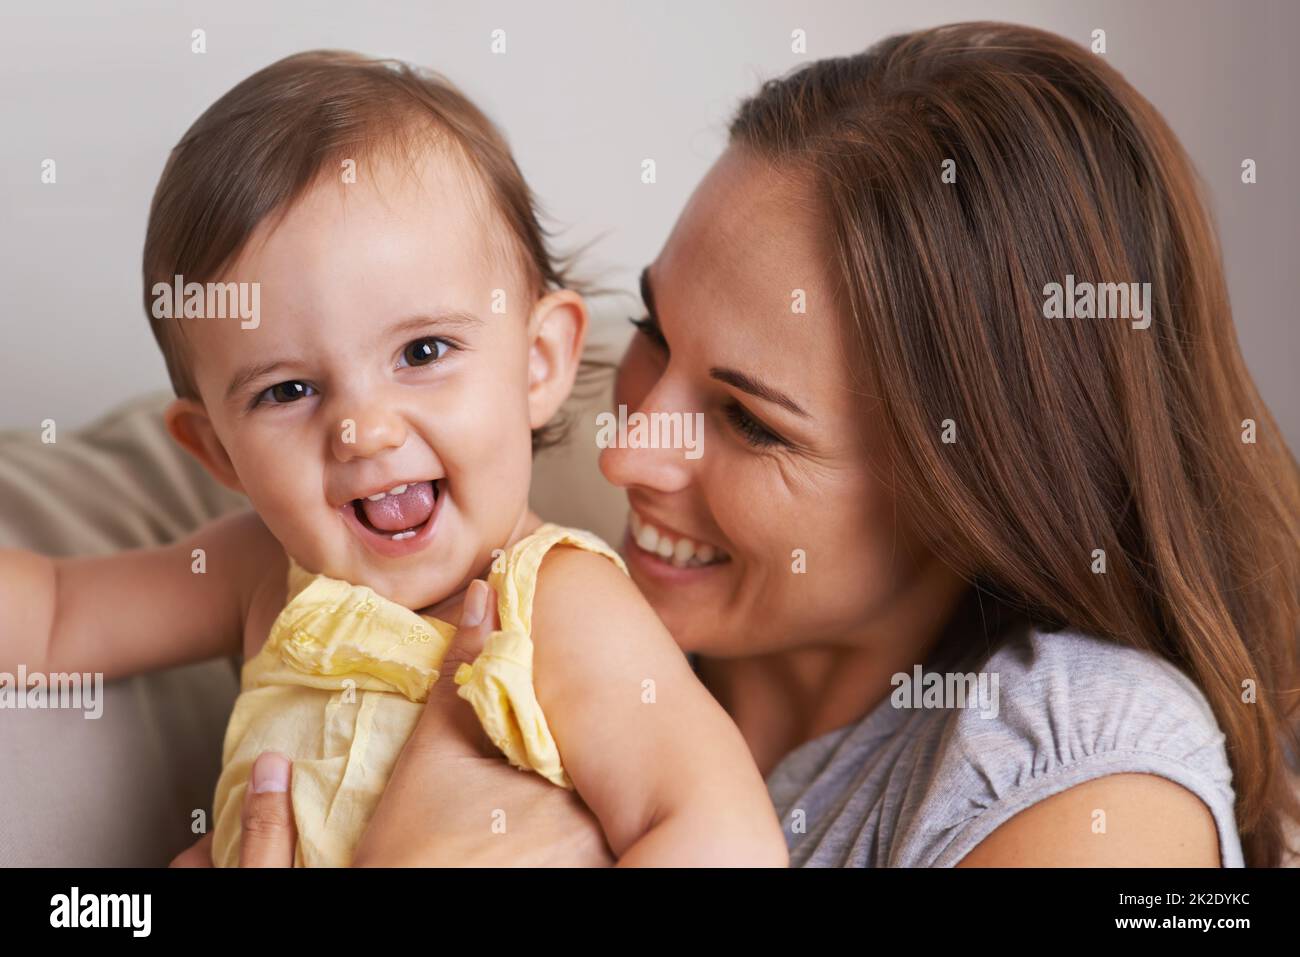 Elle me fait rire tout le temps. Gros plan portrait d'une mère et d'une petite fille qui rit. Banque D'Images